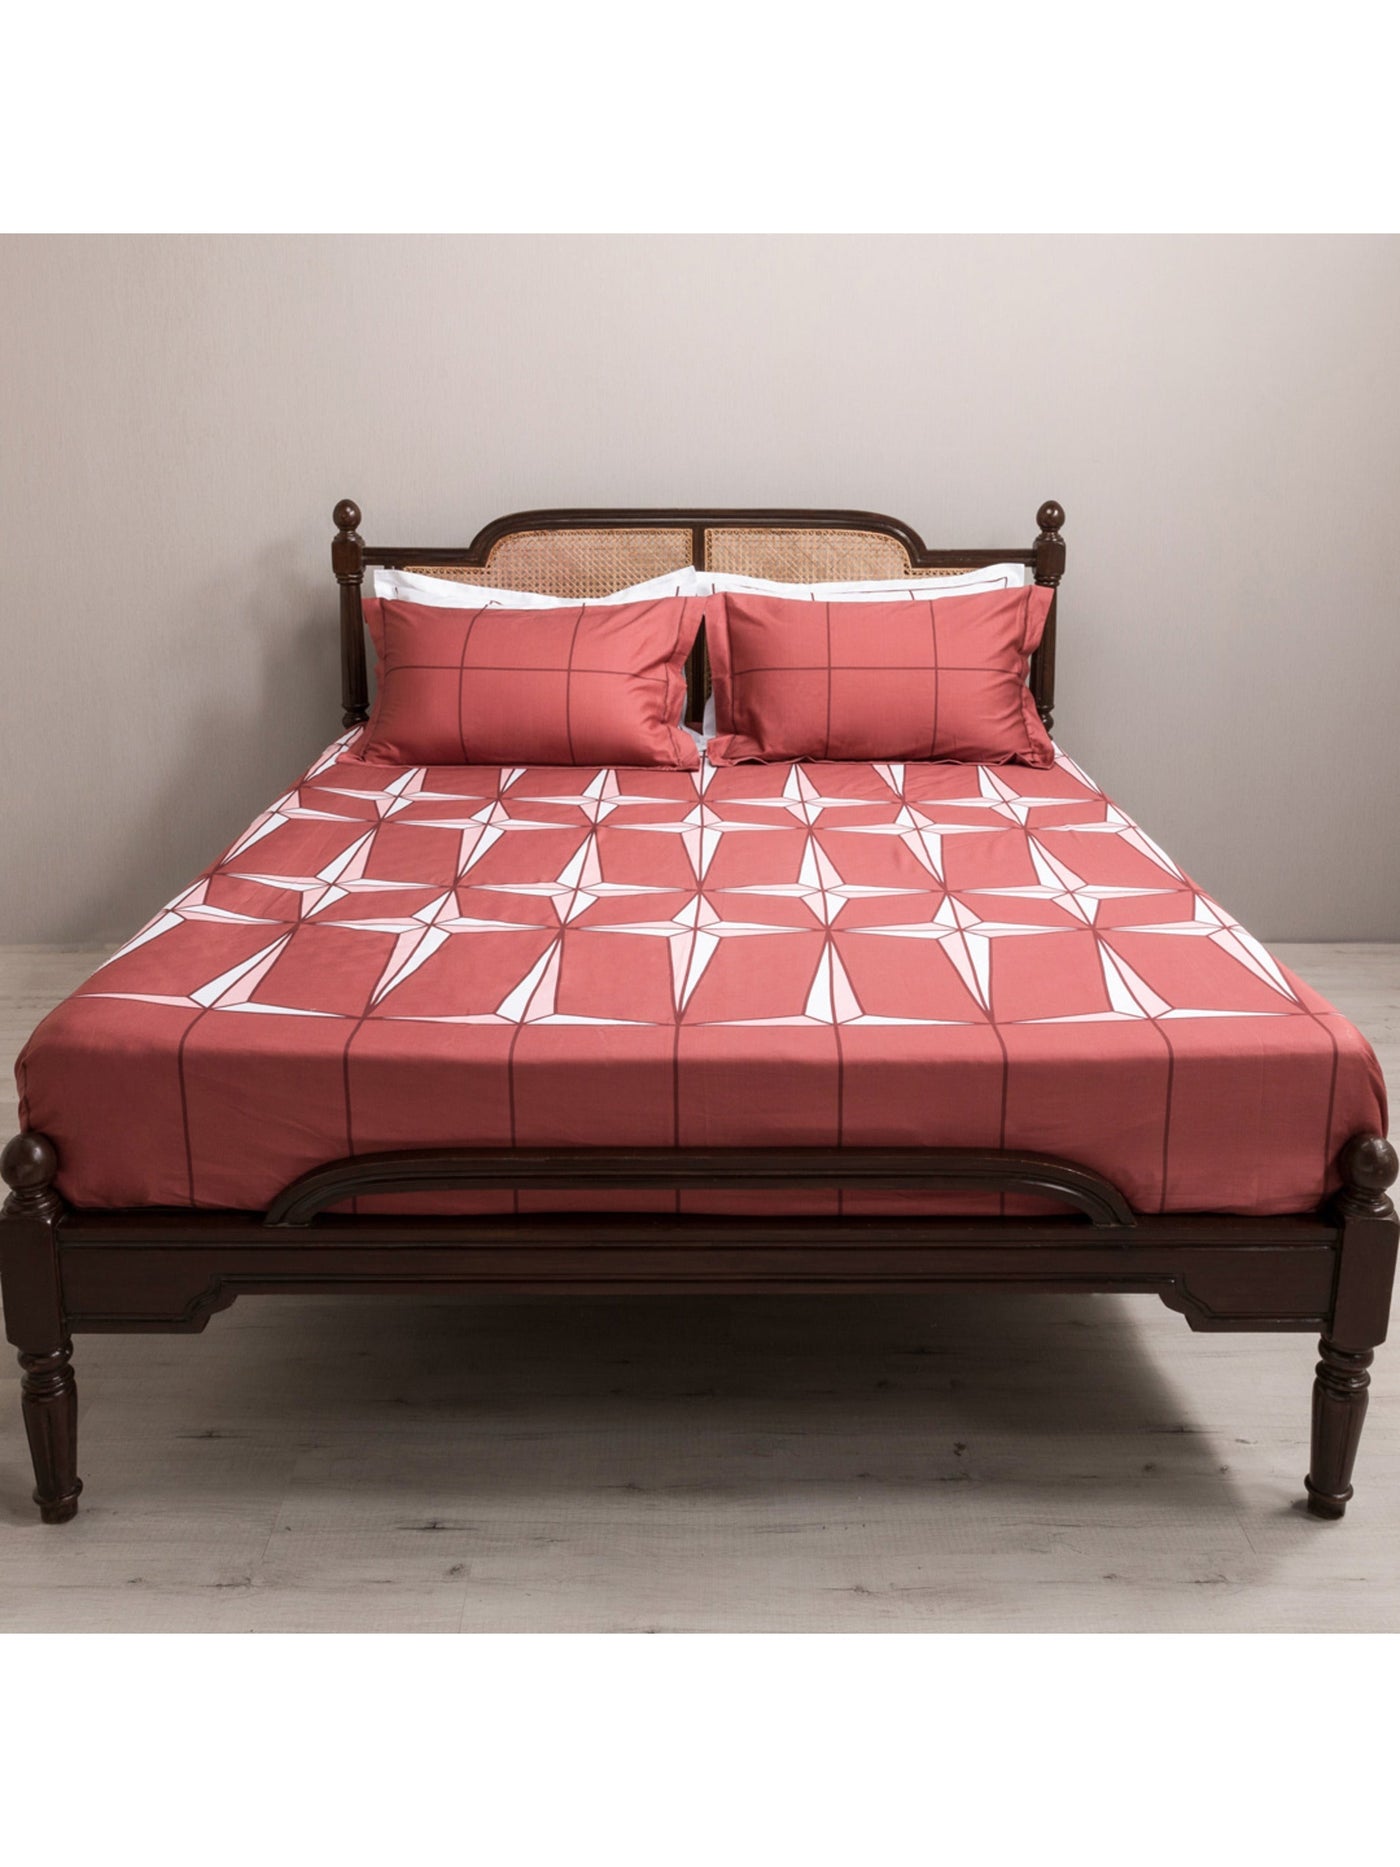 Bedsheet - The Holy Azulejos